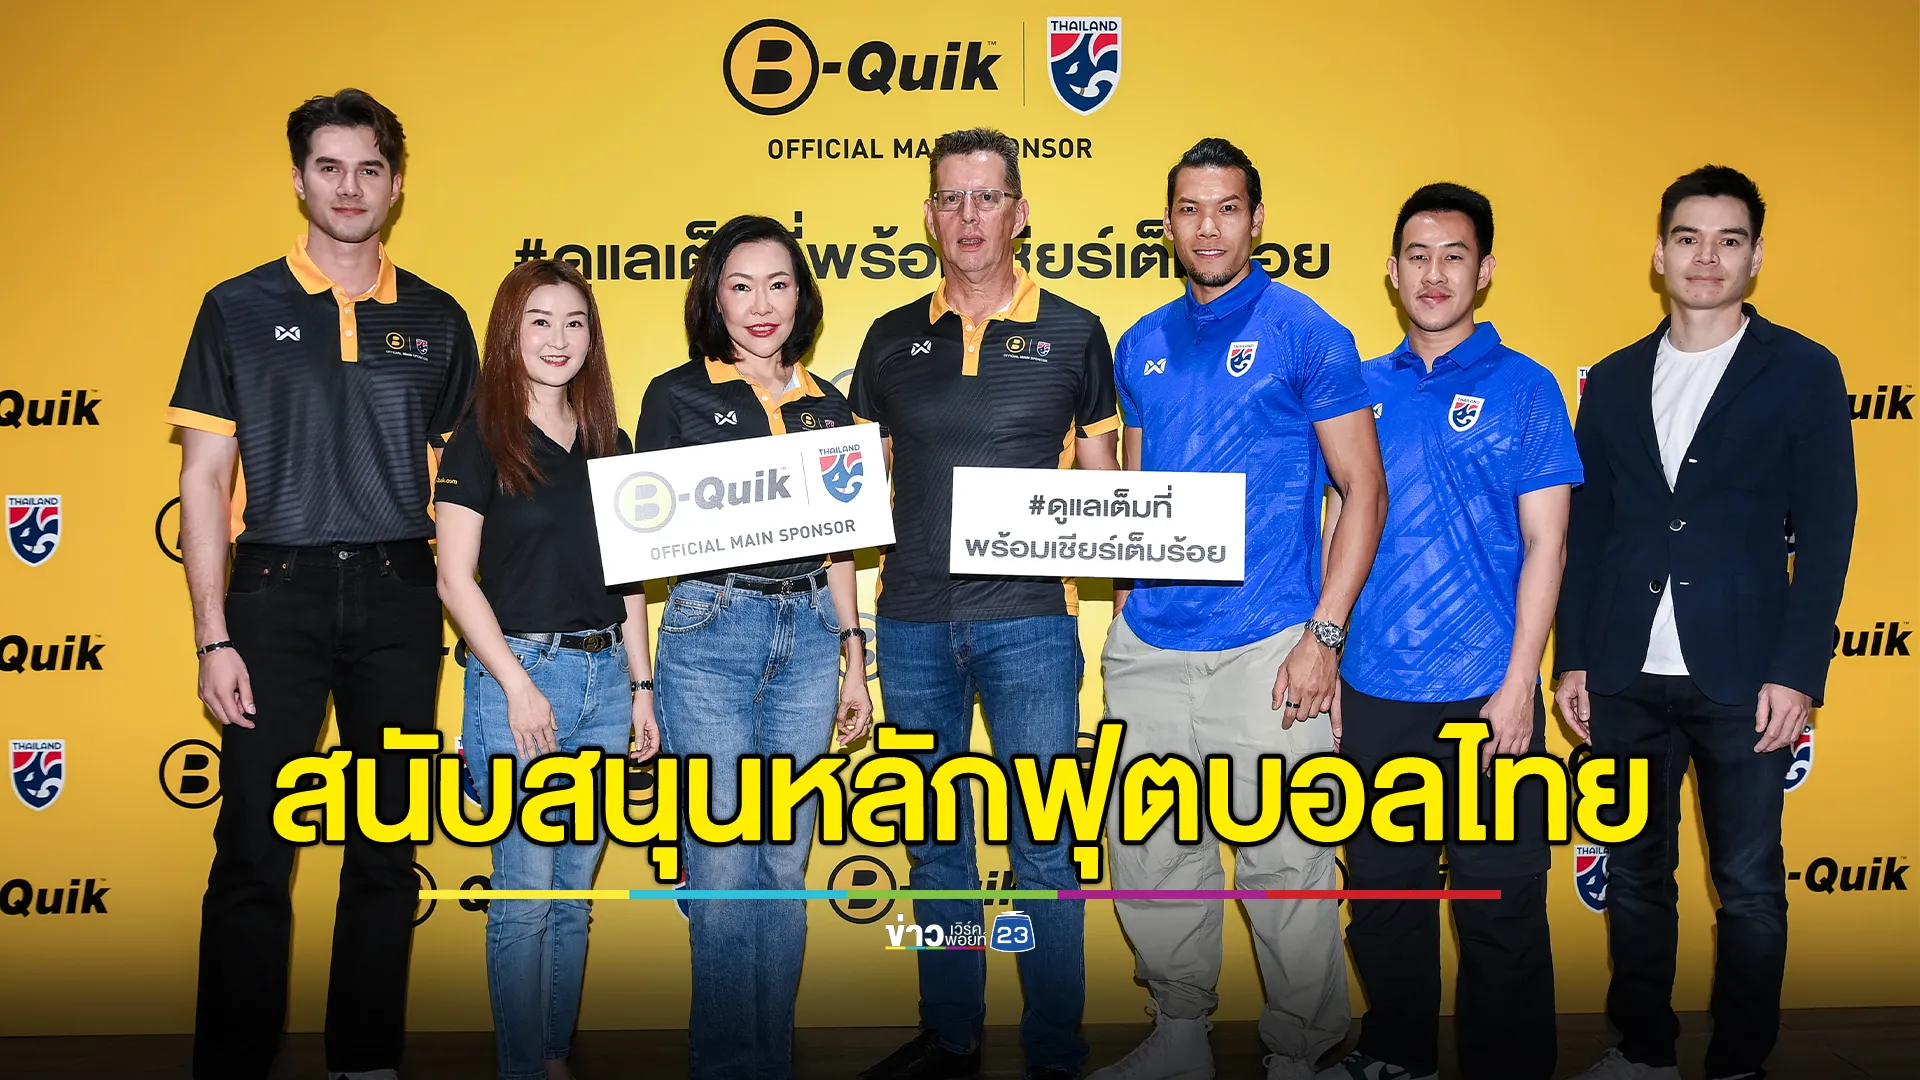 ‘บี-ควิก’ประกาศการเป็นผู้สนับสนุนหลักฟุตบอลทีมชาติไทยอย่างเป็นทางการ ต่อเนื่องเป็นปีที่ 2 